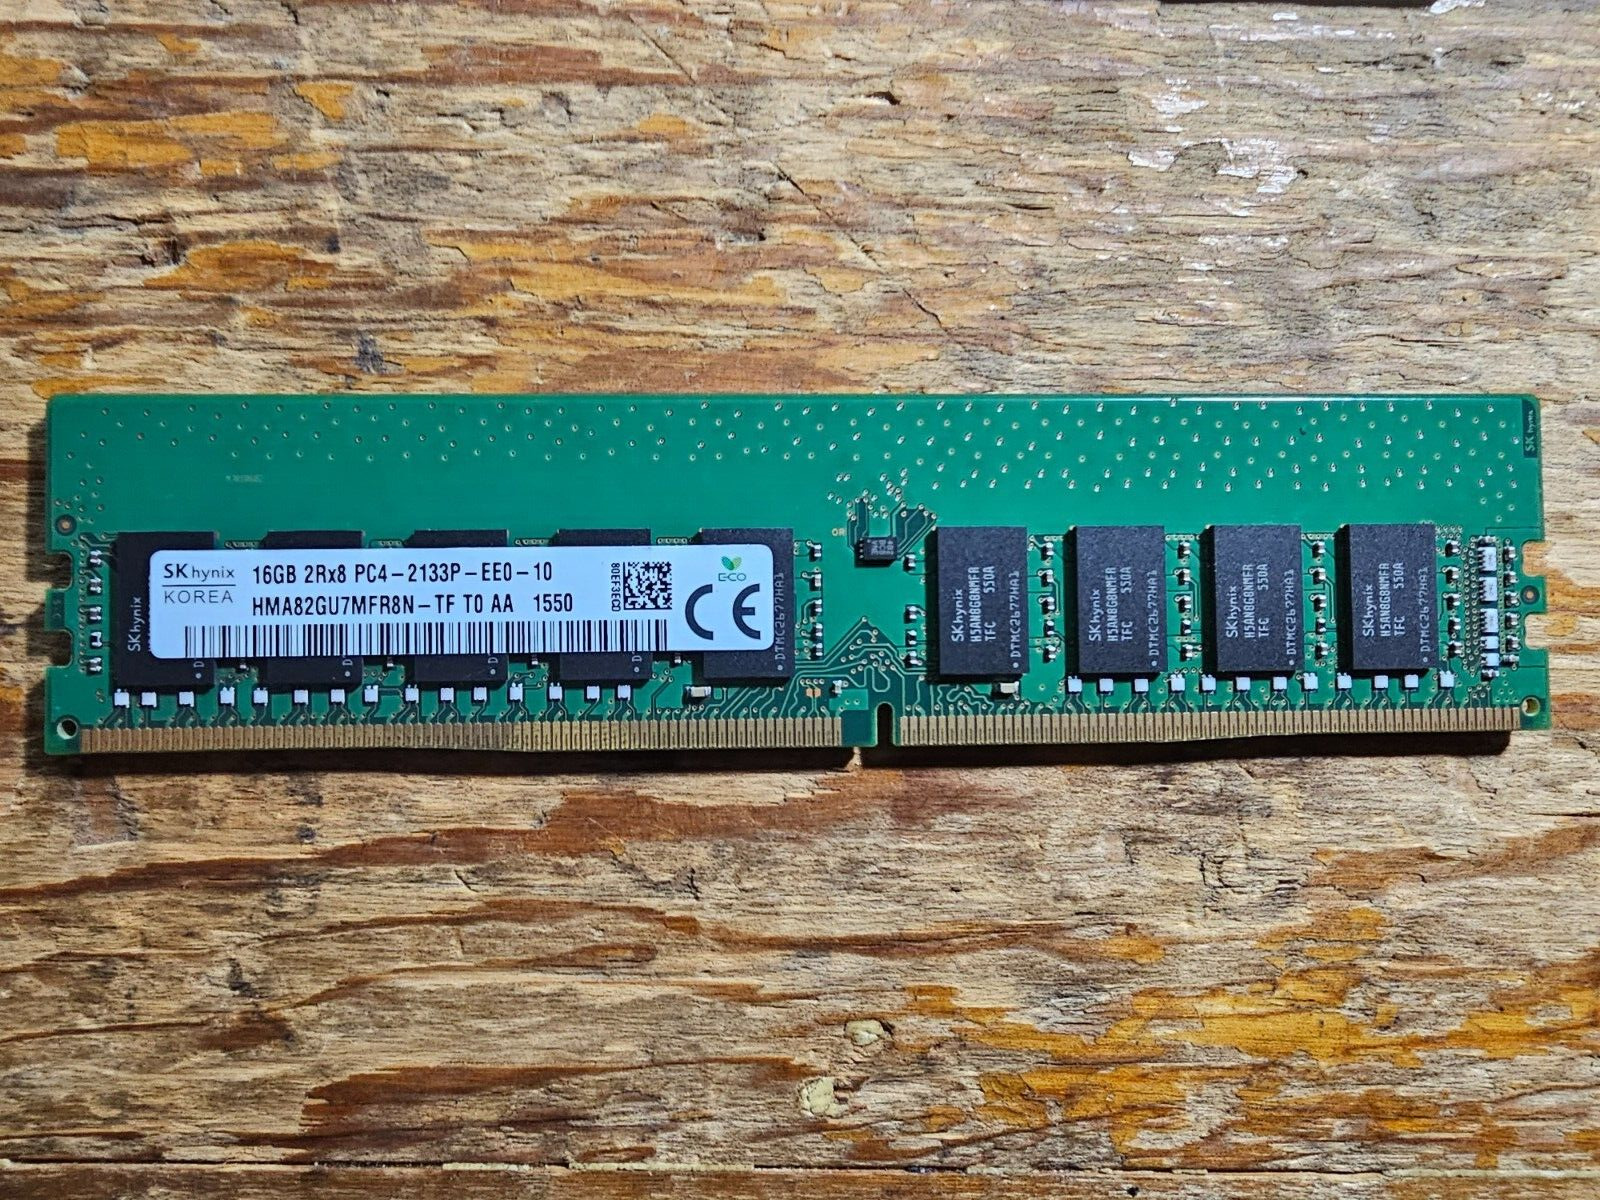 SK Hynix 16GB 2Rx8 PC4 (DDR4) 2133P-EE0-10 HMA82GU7MFR8N-TF T0 AA 1550